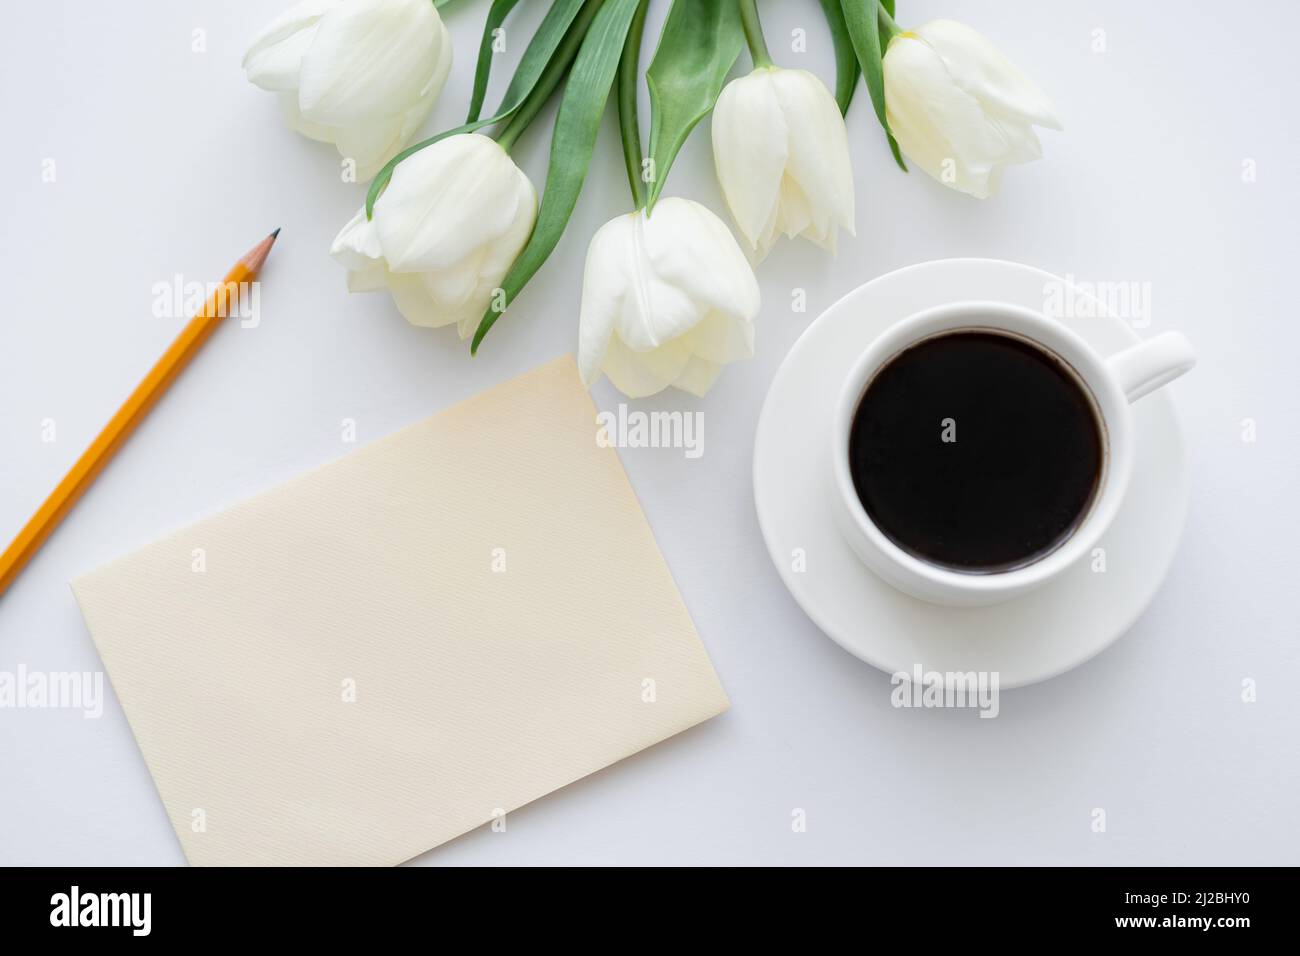 vista dall'alto della busta con matita vicino alla tazza con caffè e tulipani su bianco Foto Stock